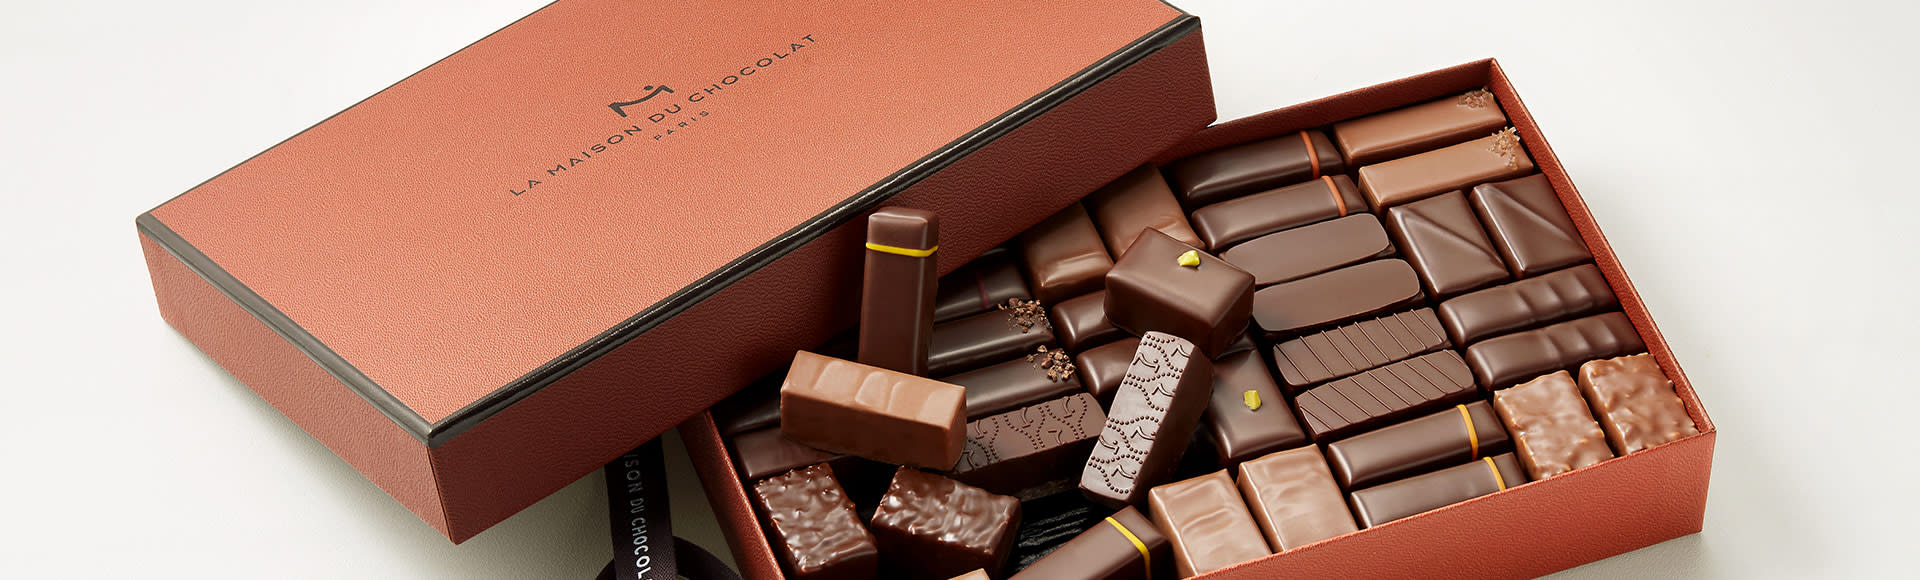 Coffret de Chocolats noir 24 chocolats - La Maison du Chocolat